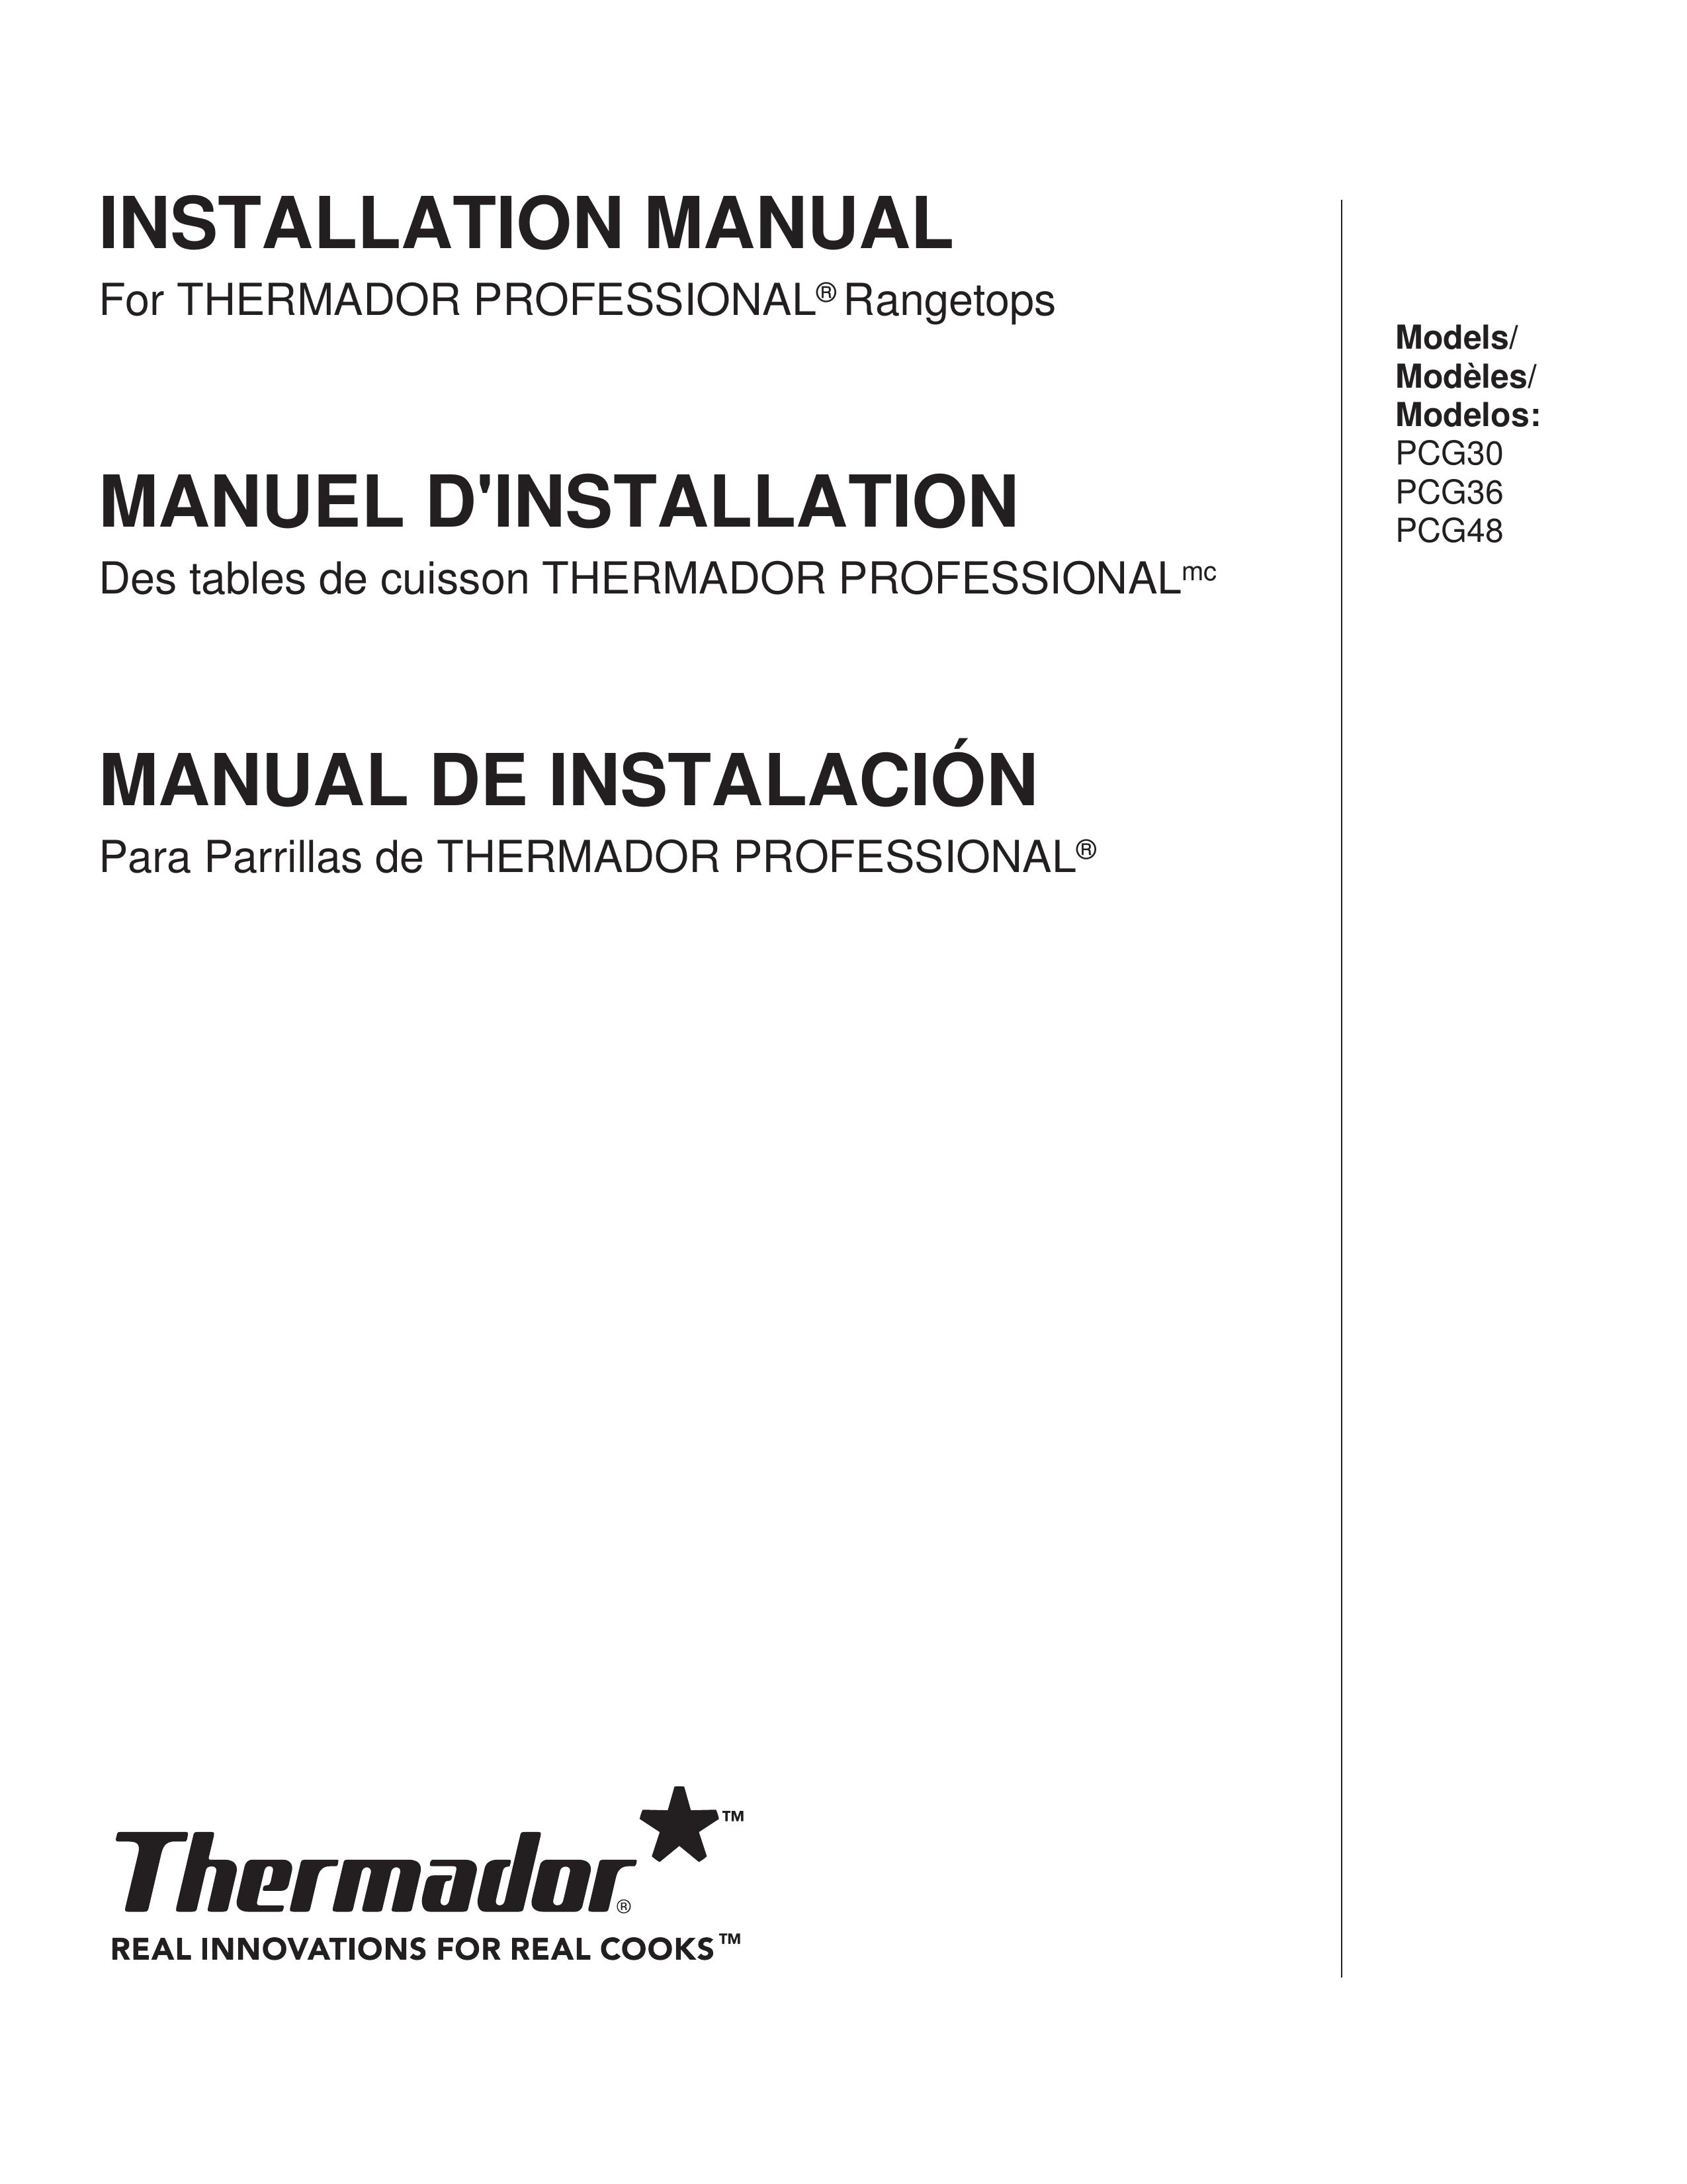 Thermador PCG30 Wok User Manual